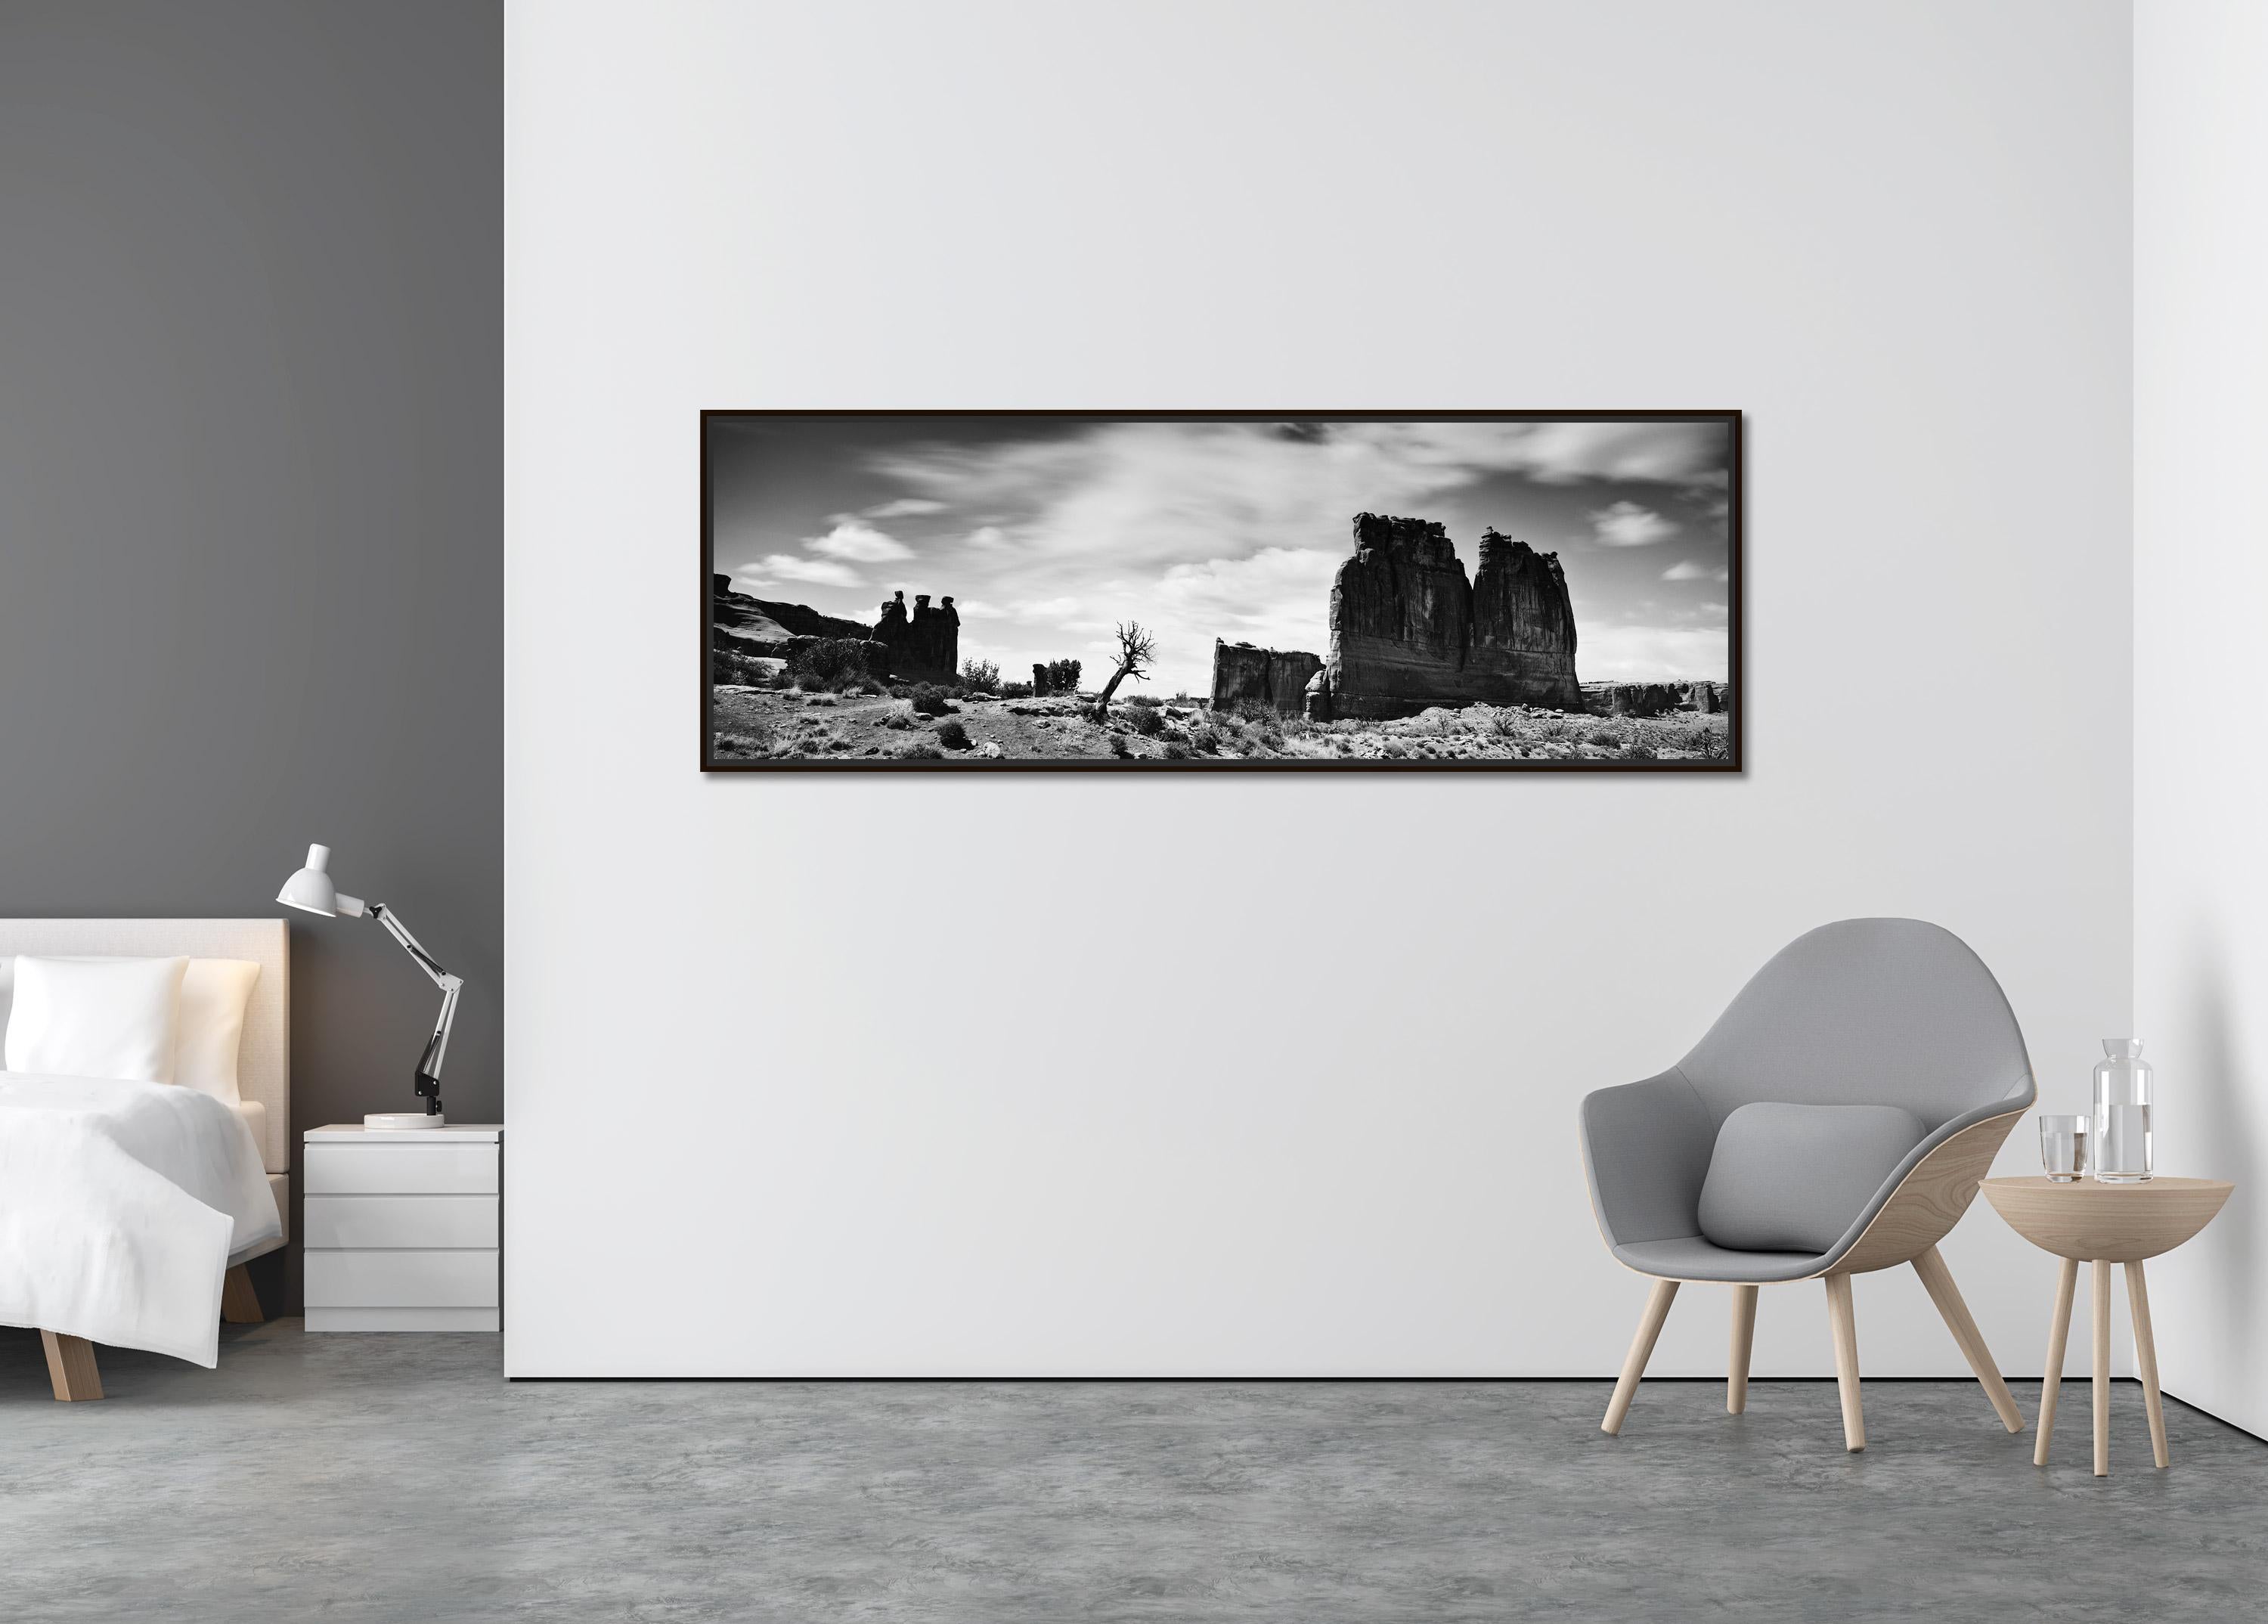 Wild West Panorama, Arches Park, Utah, USA, Schwarz-Weiß-Landschaftsfotografie (Zeitgenössisch), Photograph, von Gerald Berghammer